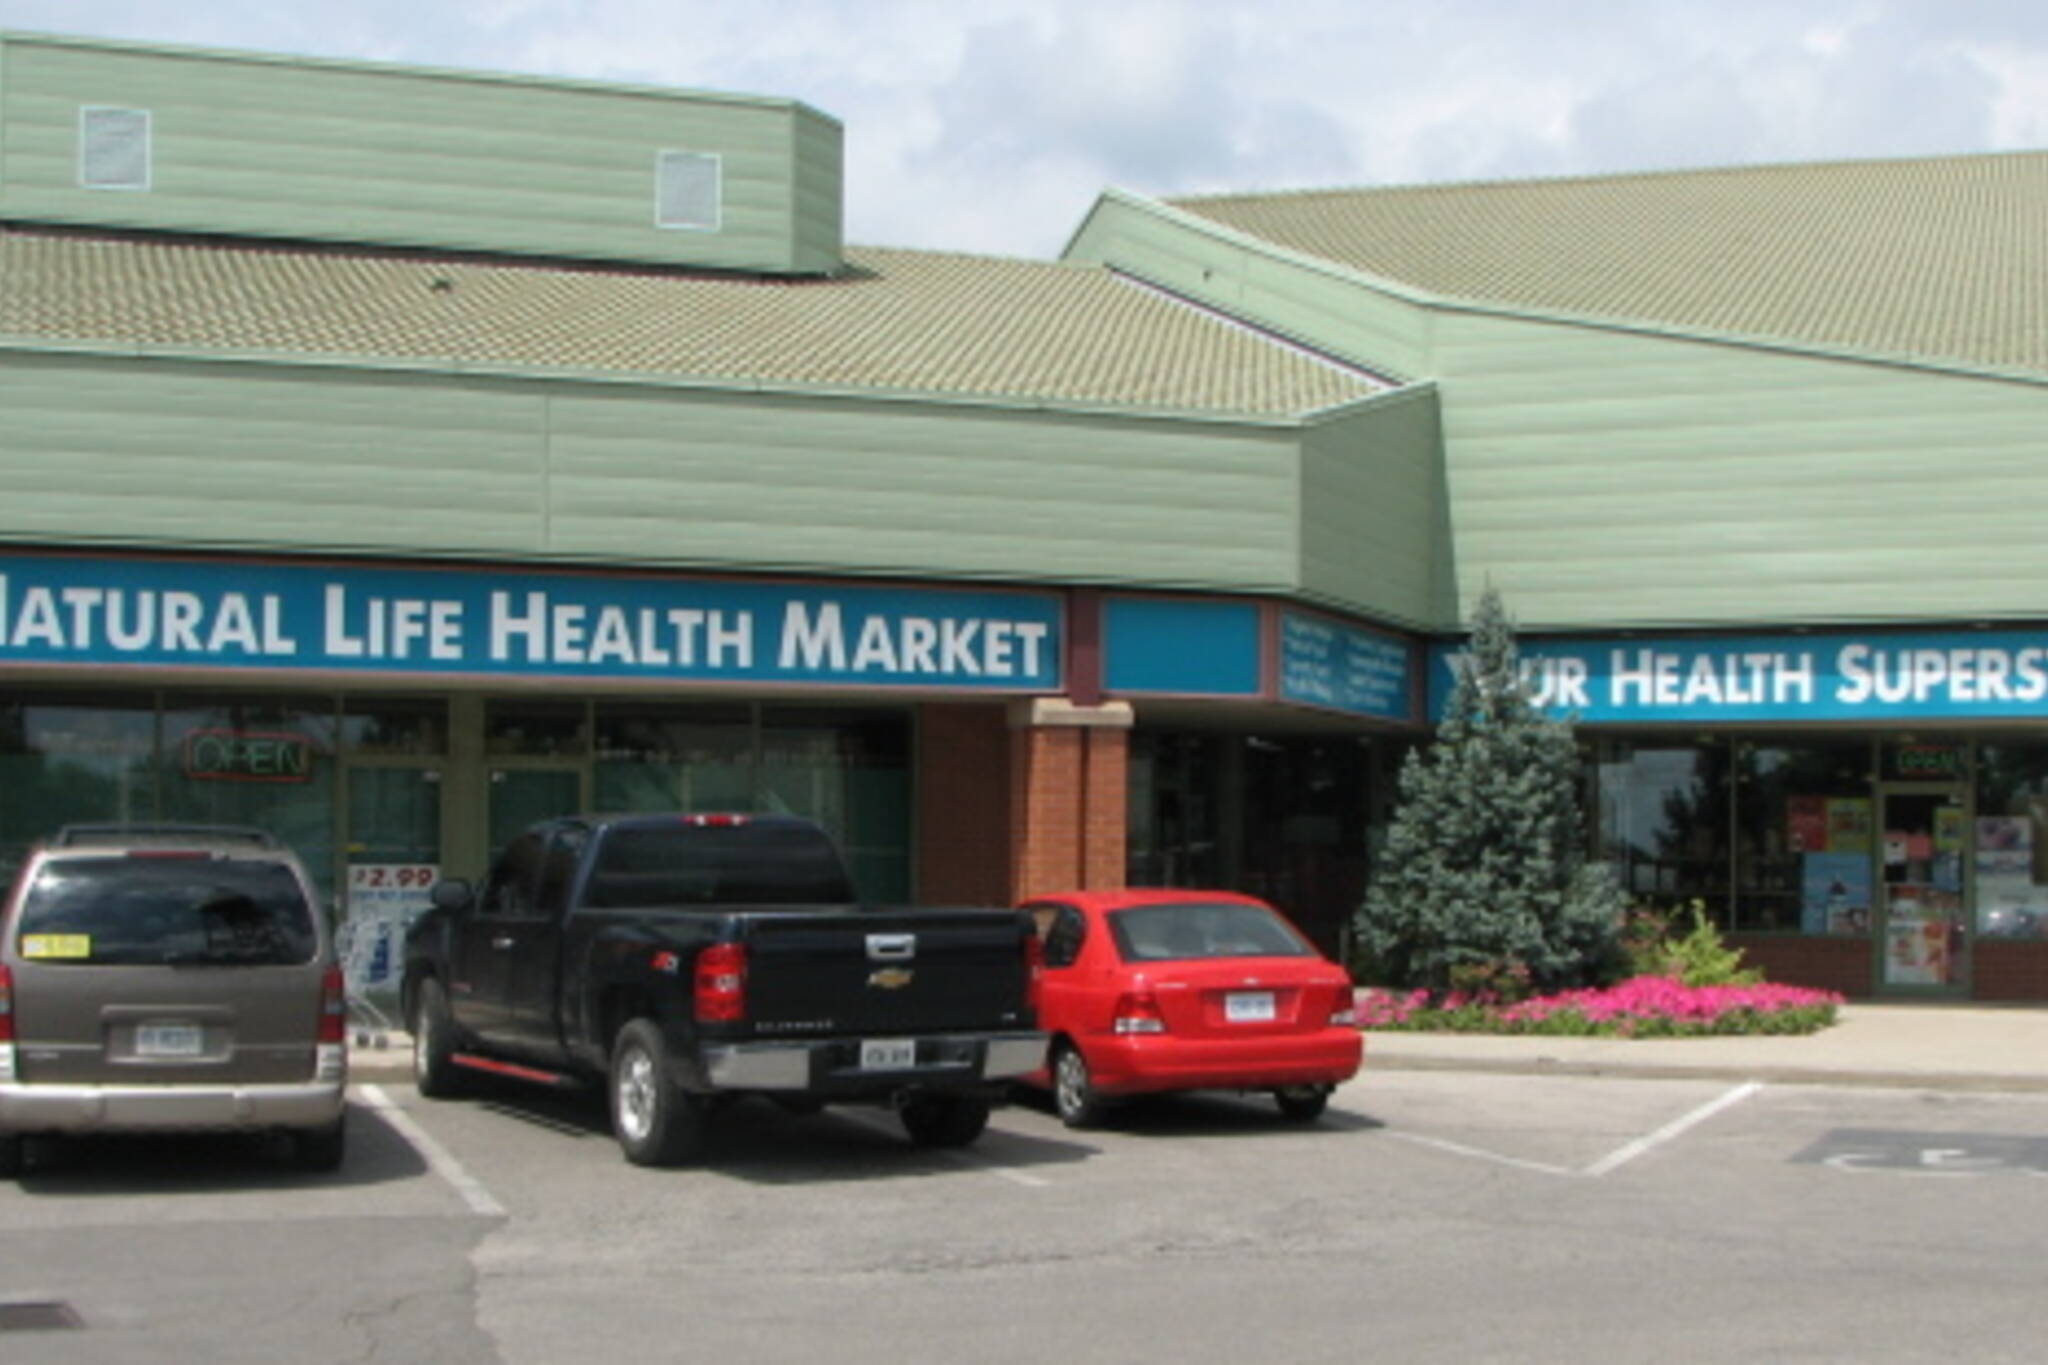 Natural Life Health Market